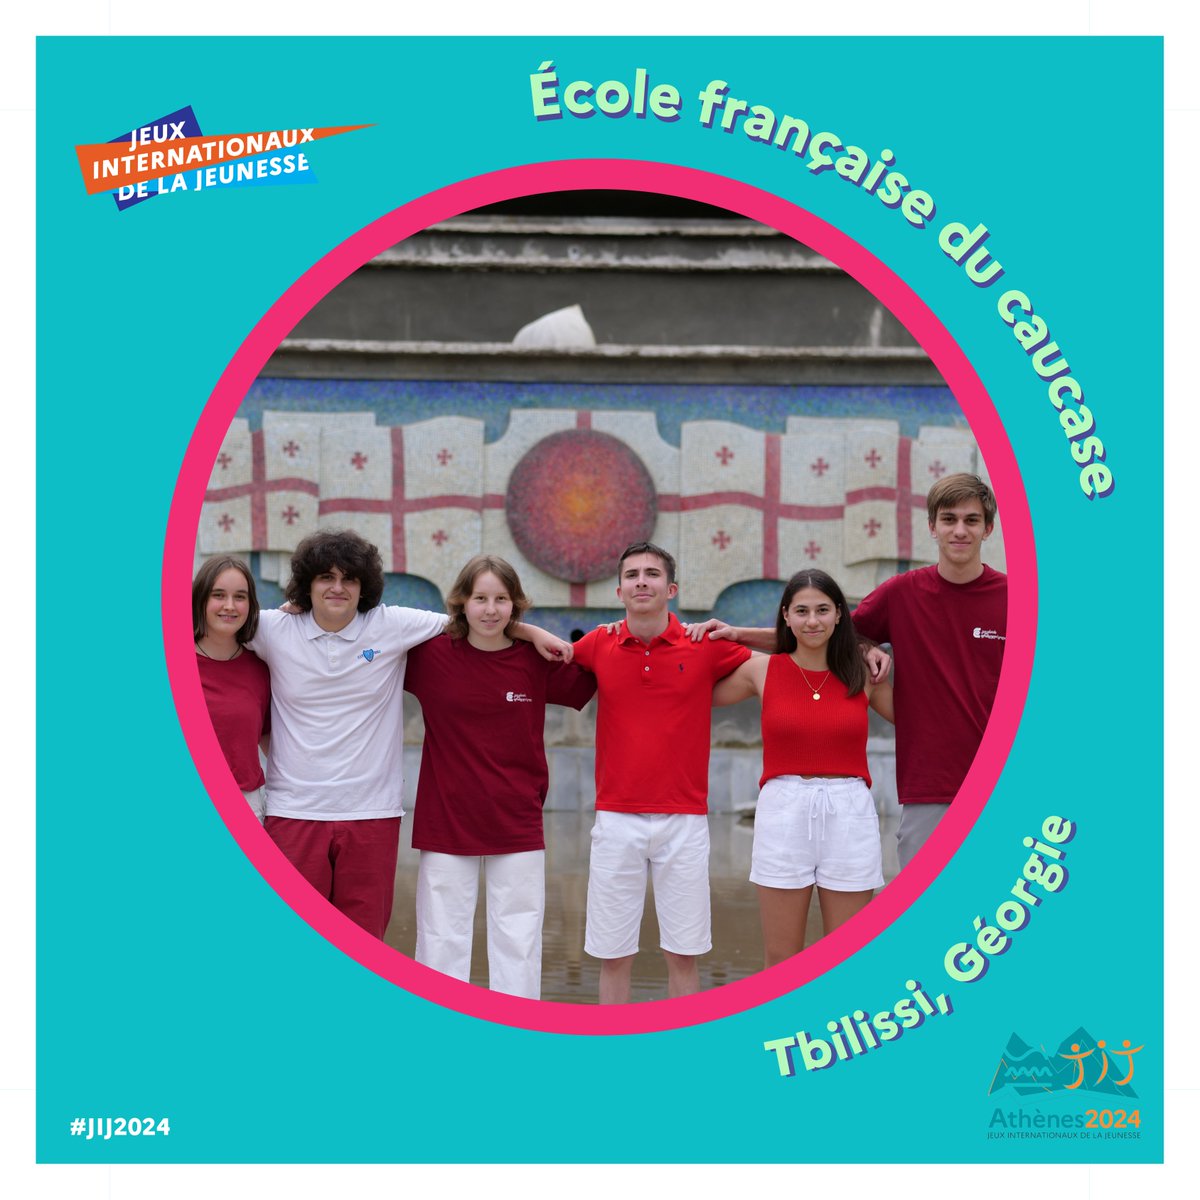 Nouvelle vague de présentation des équipes des #JIJ2024🏄‍♀️ Voici l’équipe de l’école française du Caucase à Tbilissi en Géorgie 😍 💬Découvrez leur message sur Instagram : urlz.fr/qGIu